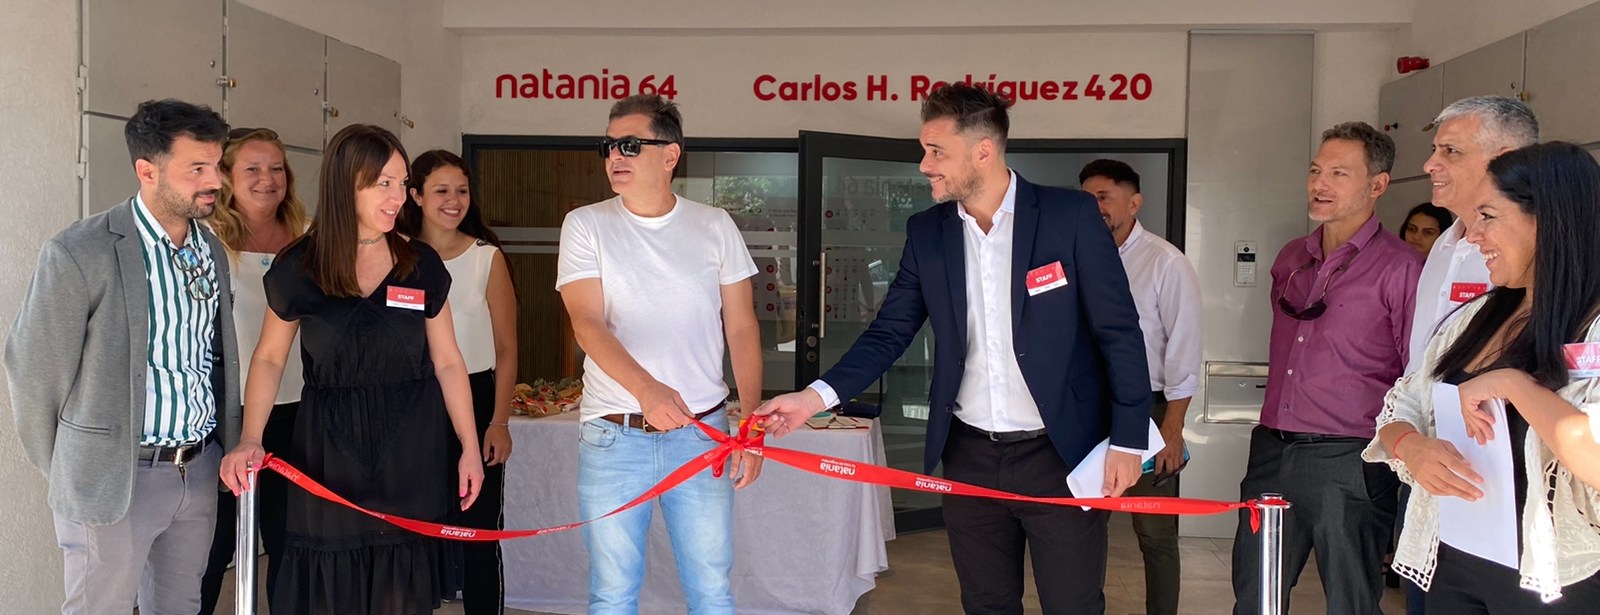 Grupo Ecipsa entrega a propietarios nuevo edificio en la capital neuquina